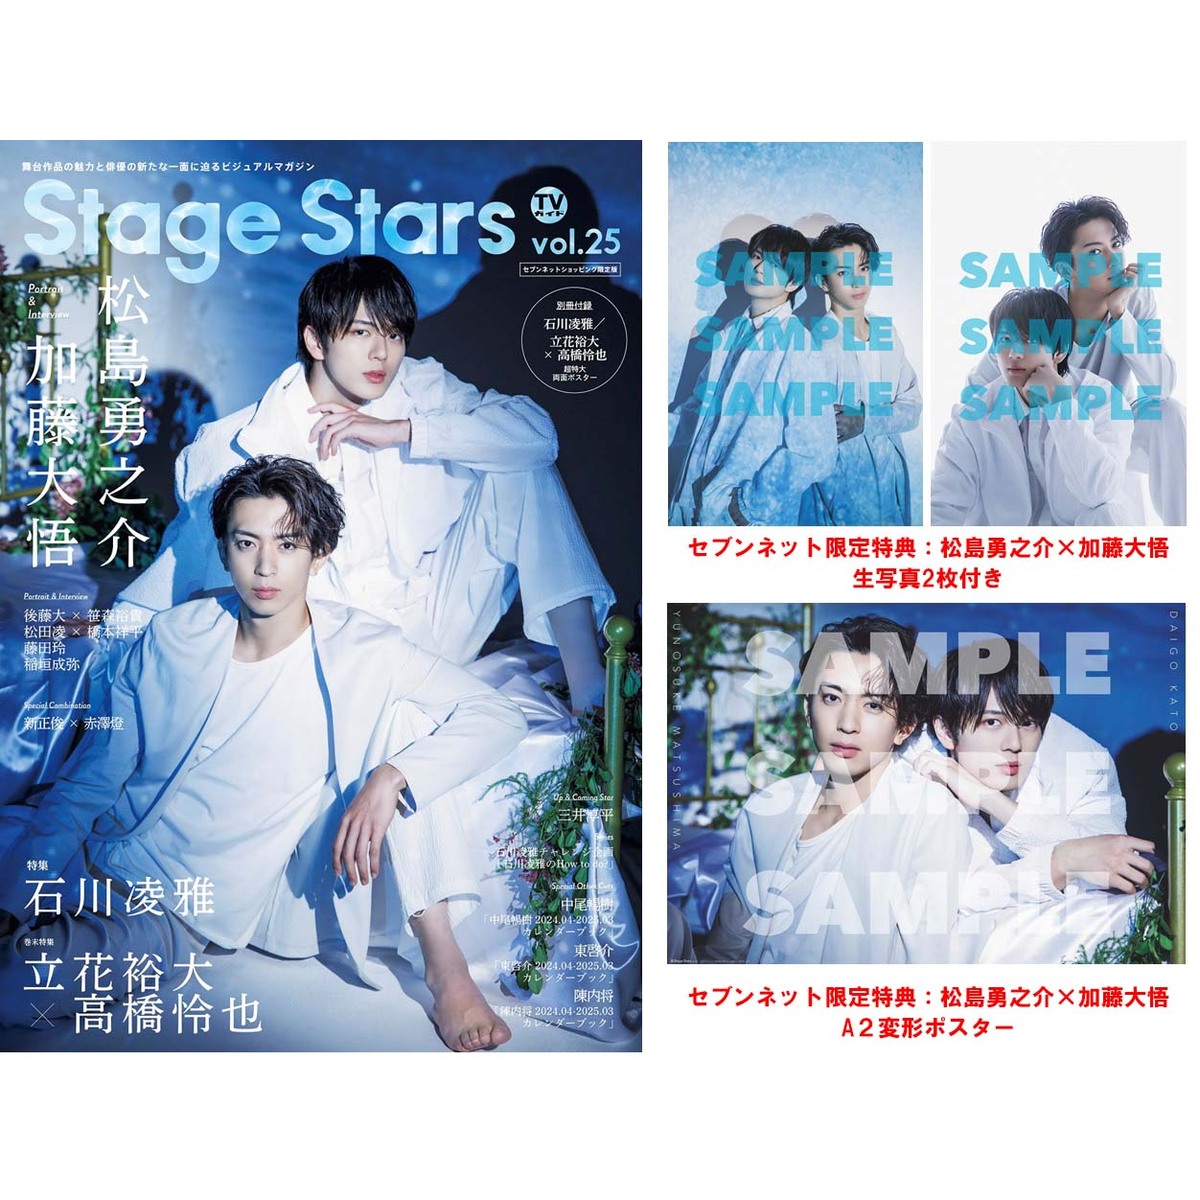 TVガイドStage Stars vol.25 セブンネット限定表紙版「松島勇之介×加藤 